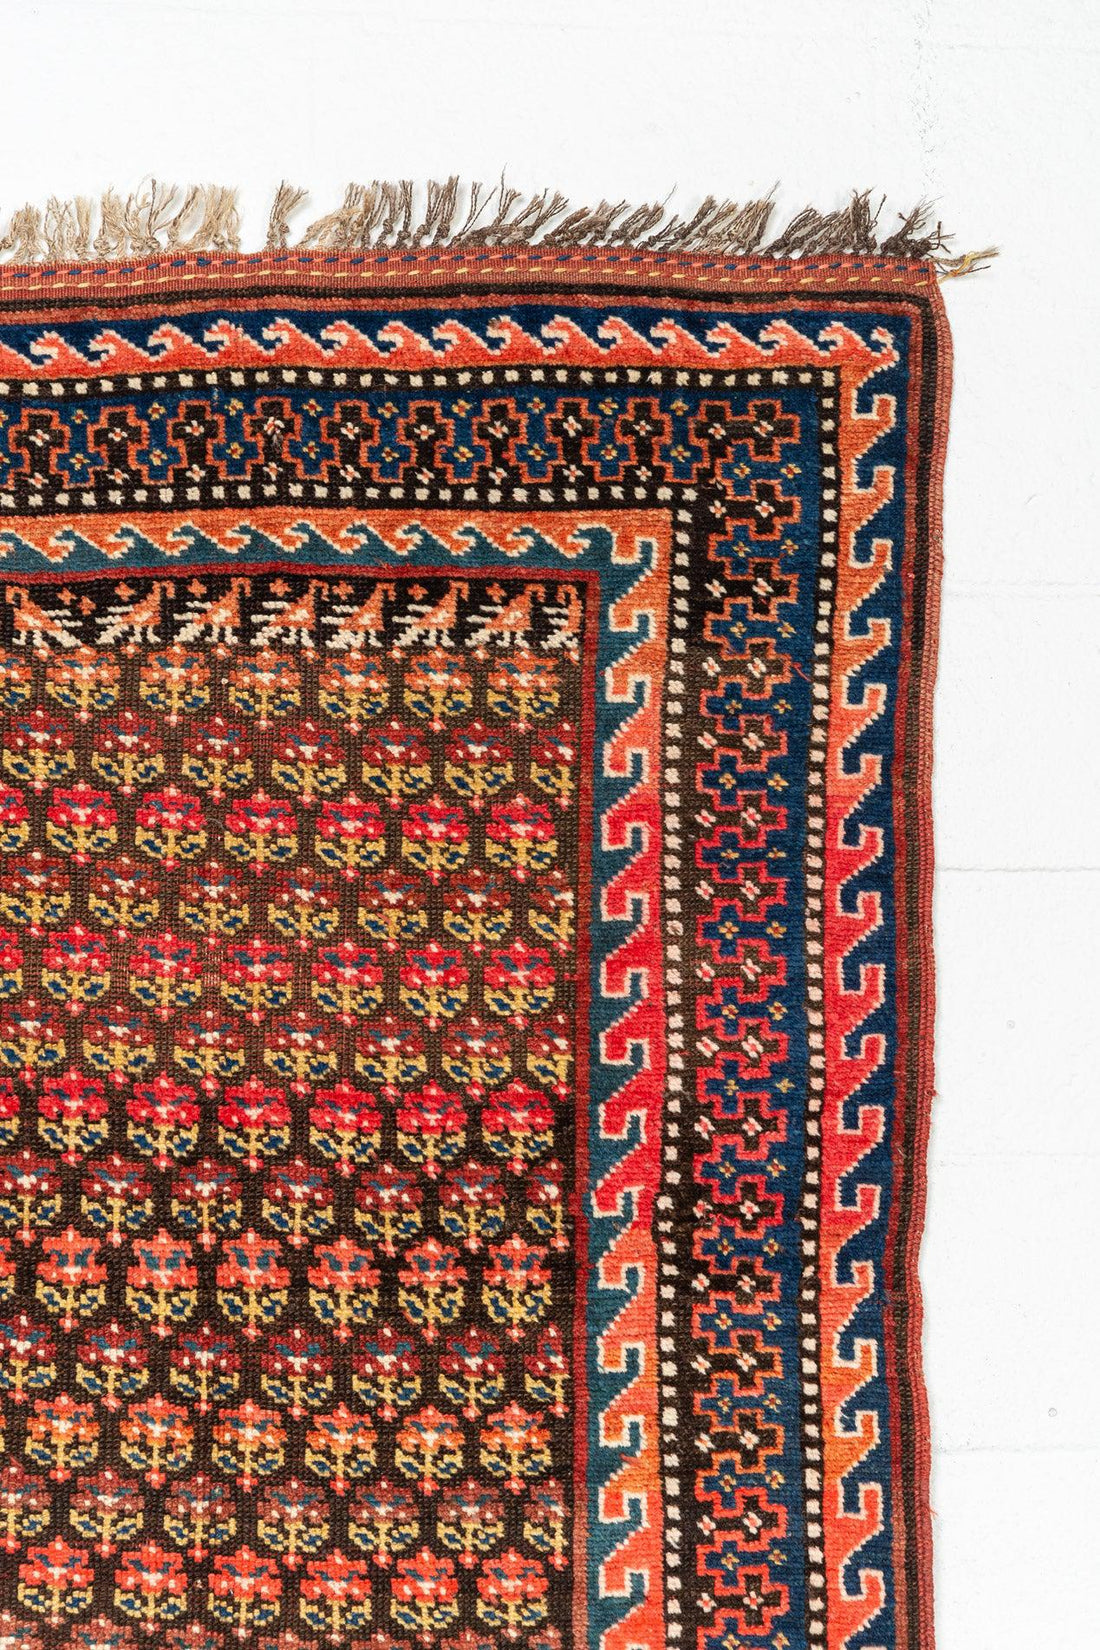 Antique West Persian Kurd Pink & Red Wool Floor Rug